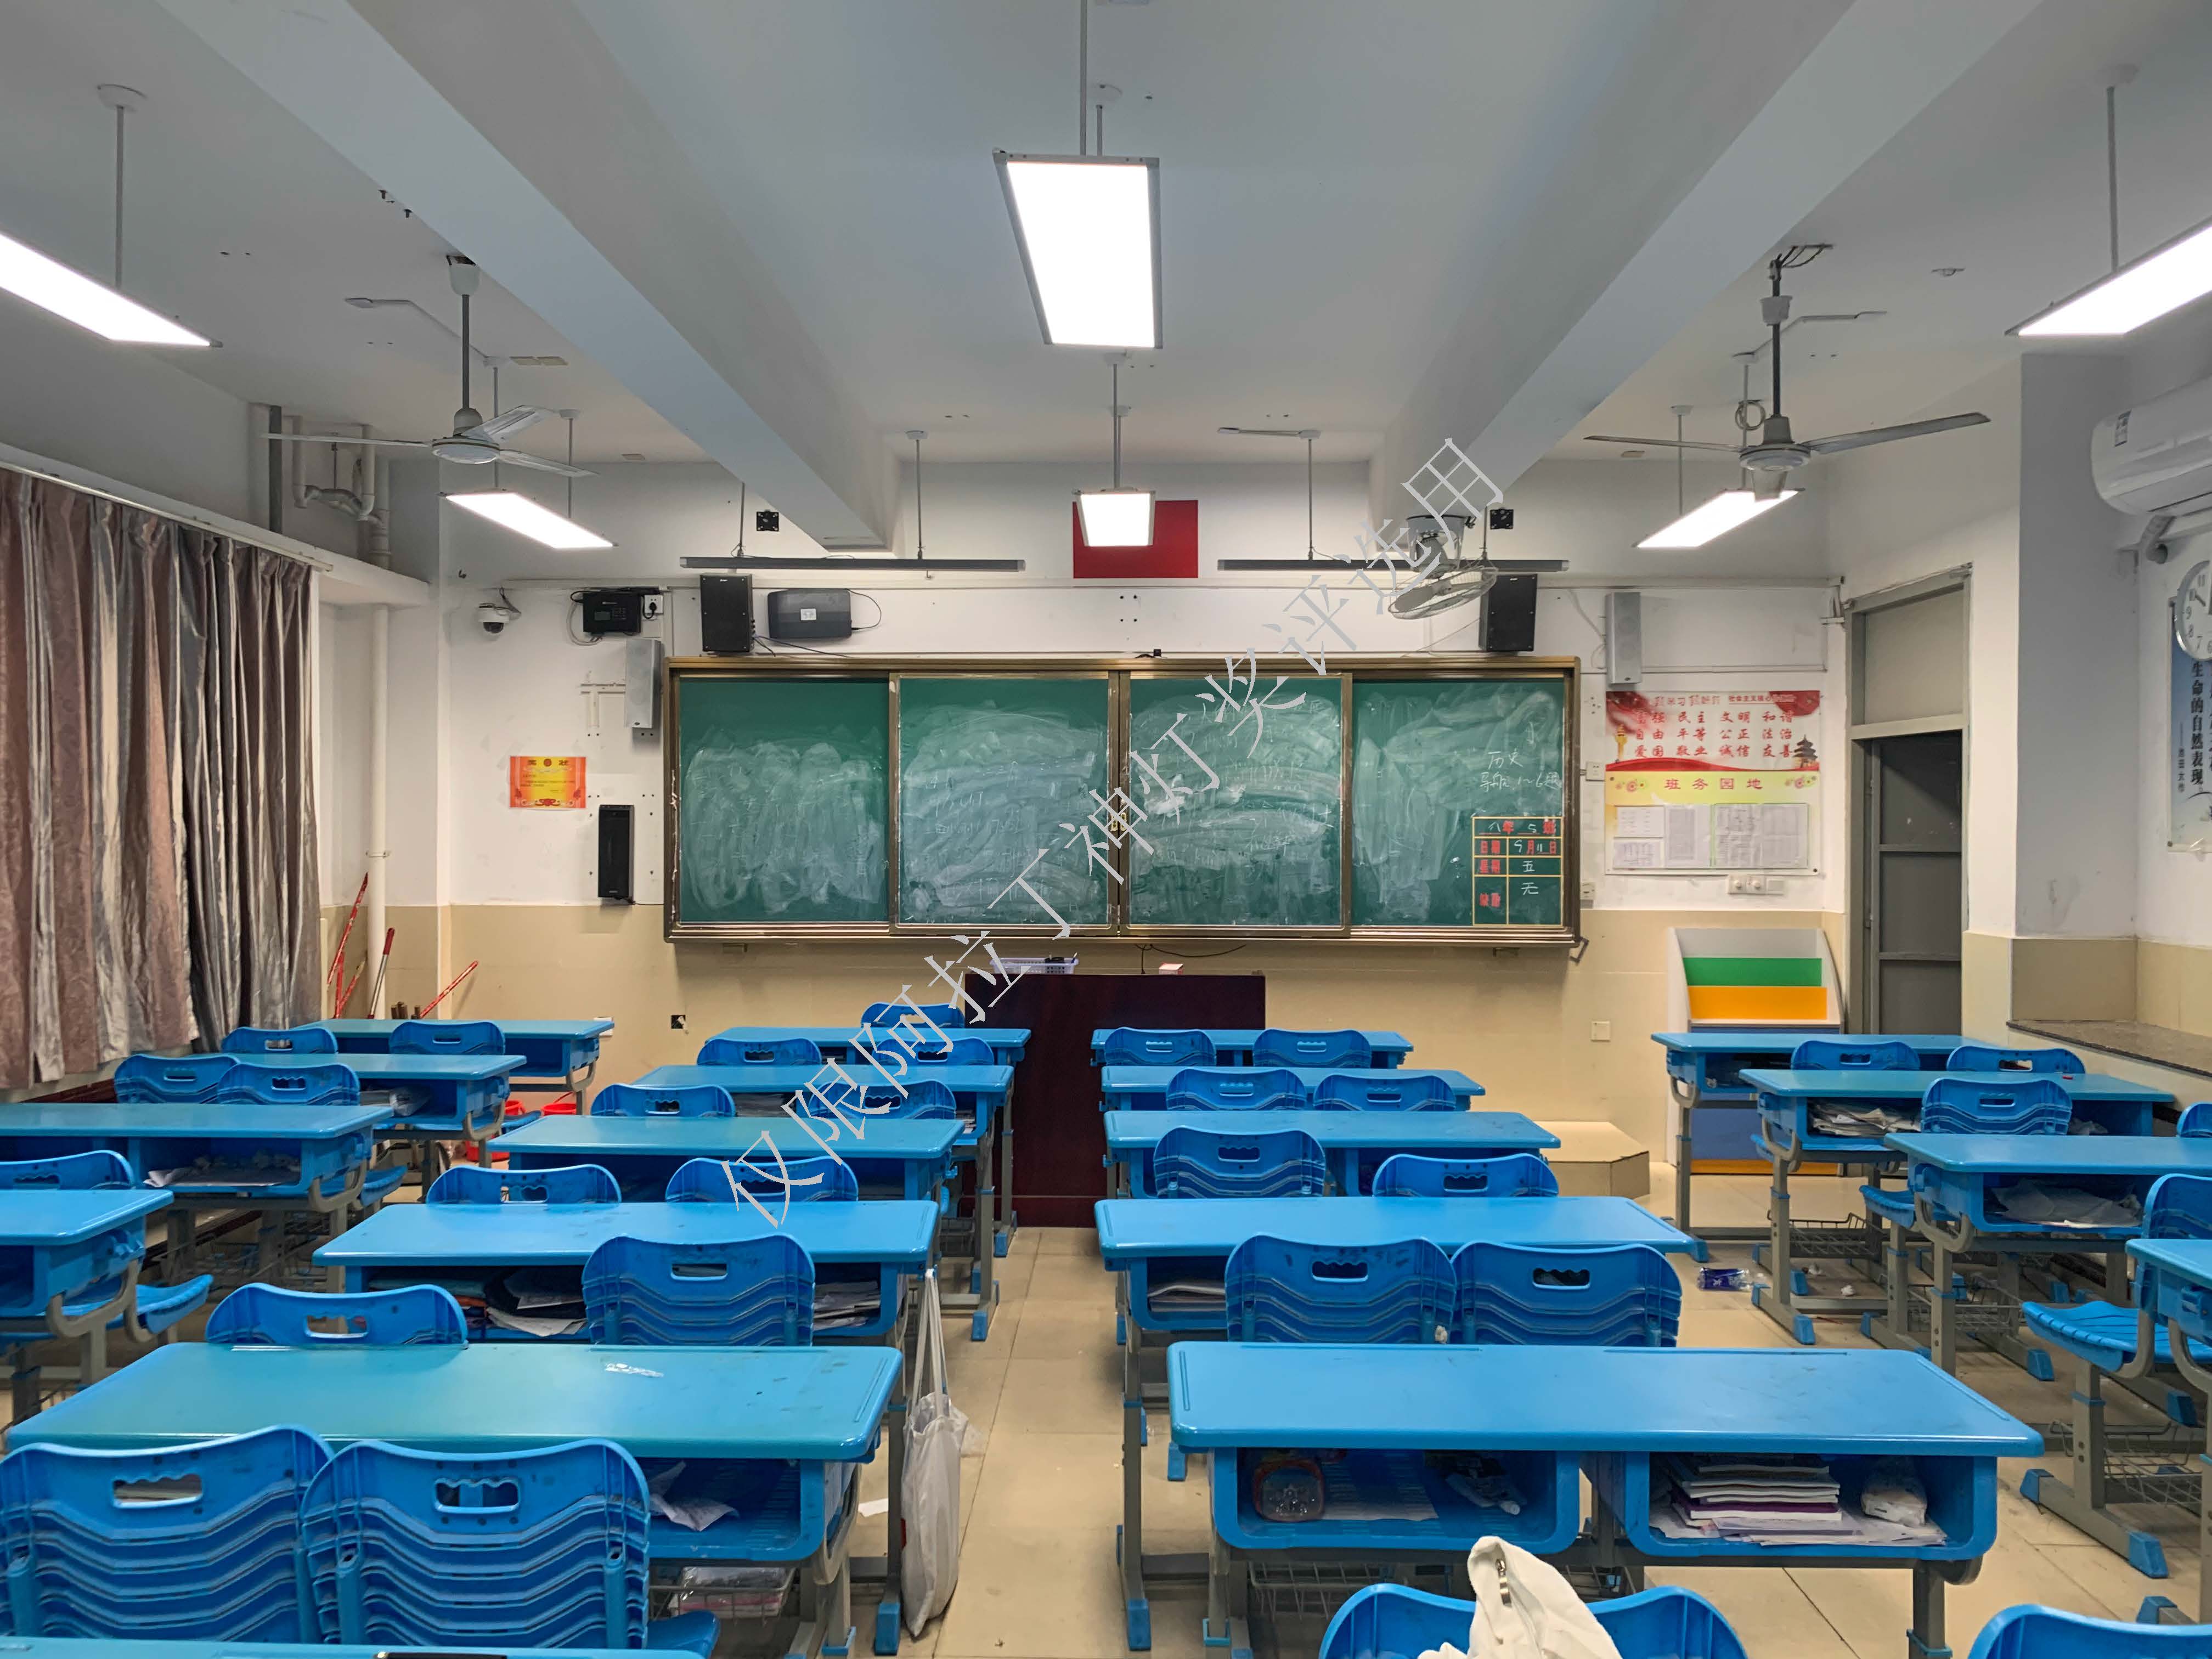 福州市马尾区教育局马尾区试点学校教室、功能室灯具改造项目